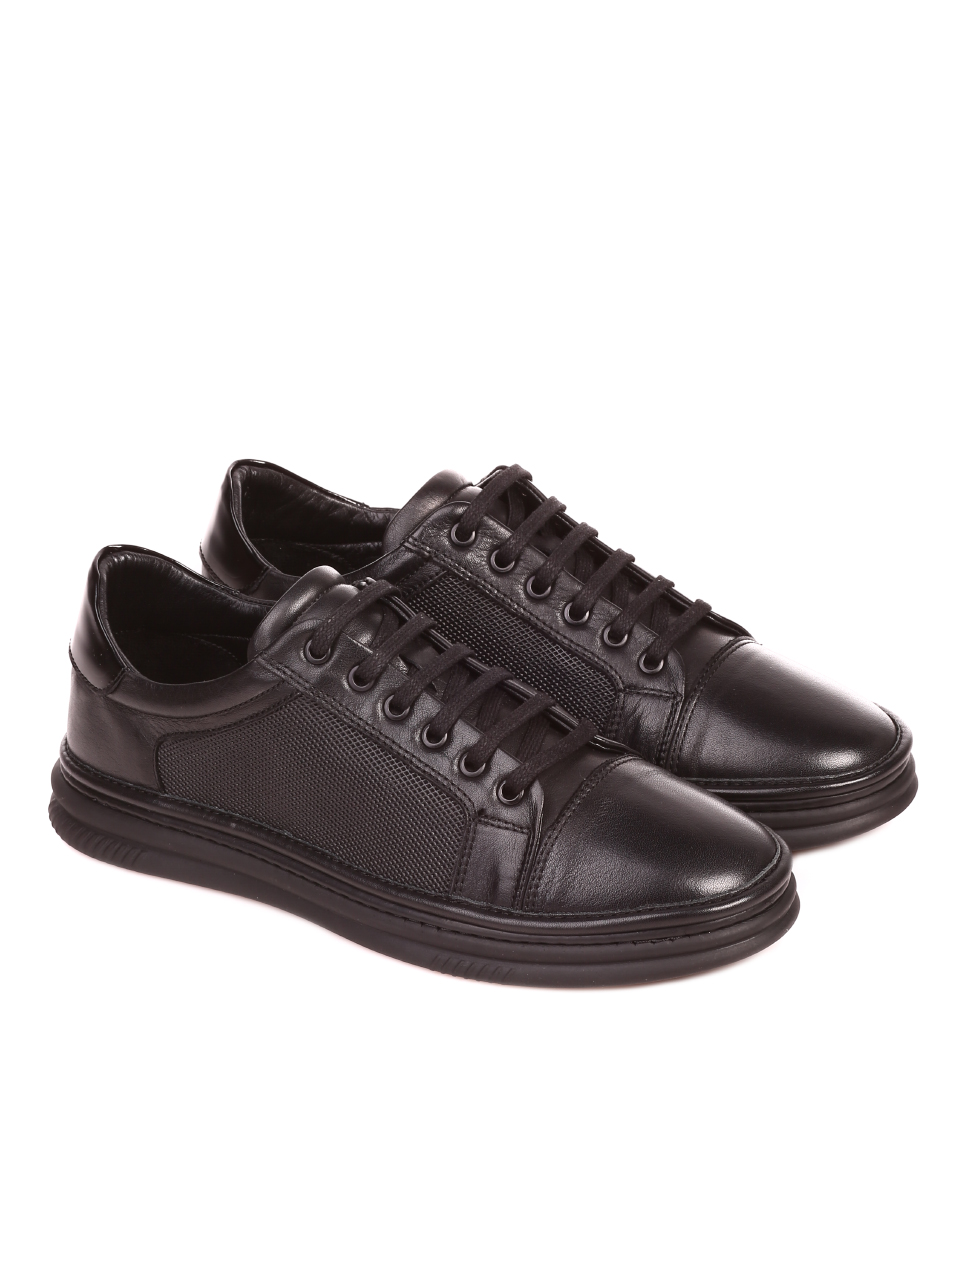 Ежедневни мъжки обувки от естествена кожа 7AT-21812 black